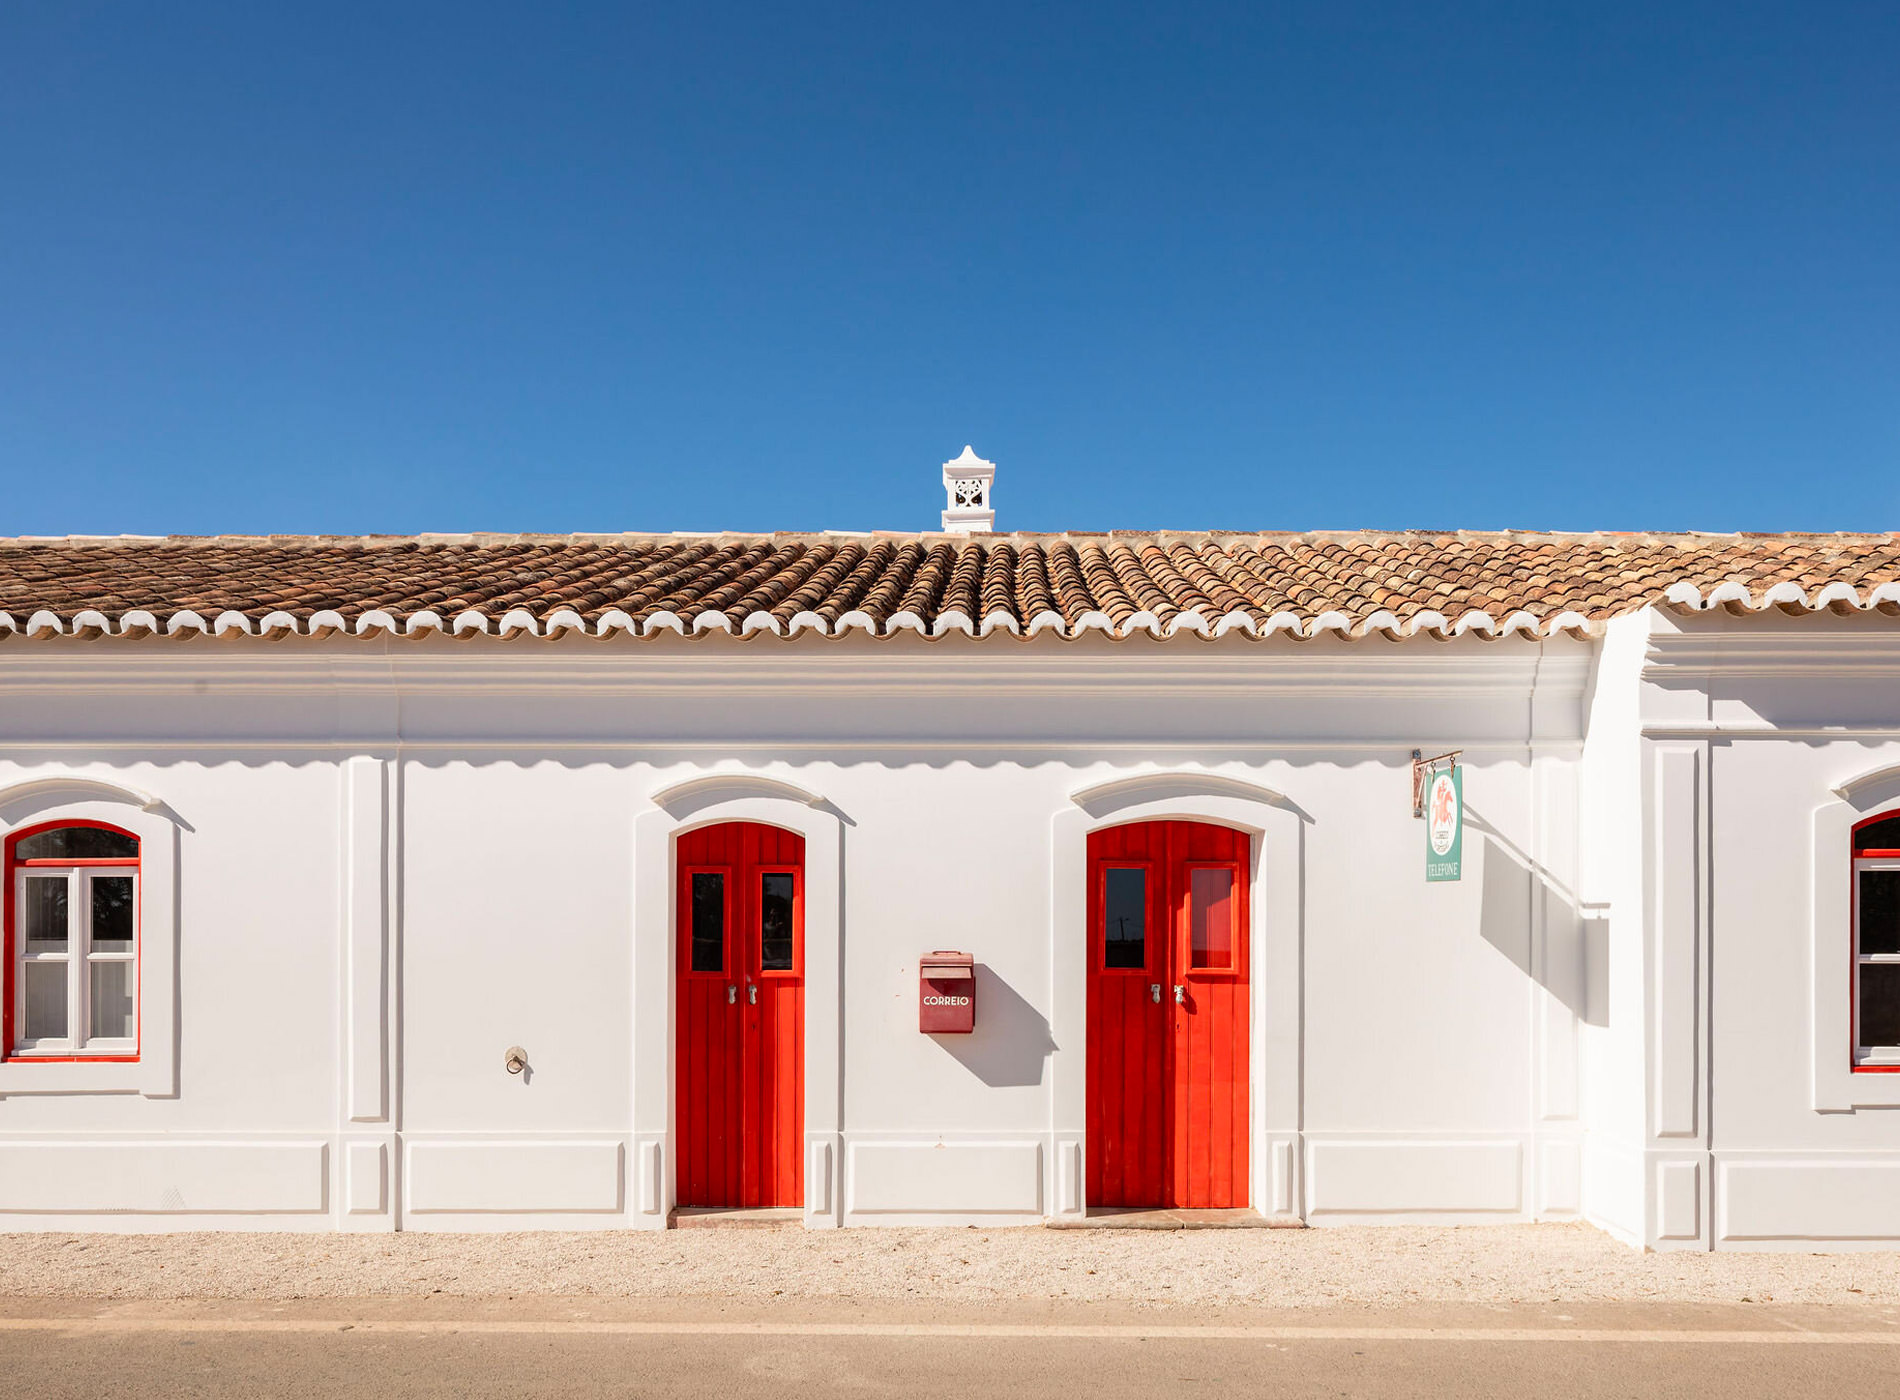 Hospedaria Hotel Pensão Agrícola (Tavira, Cacela Velha) Algarve Portugal